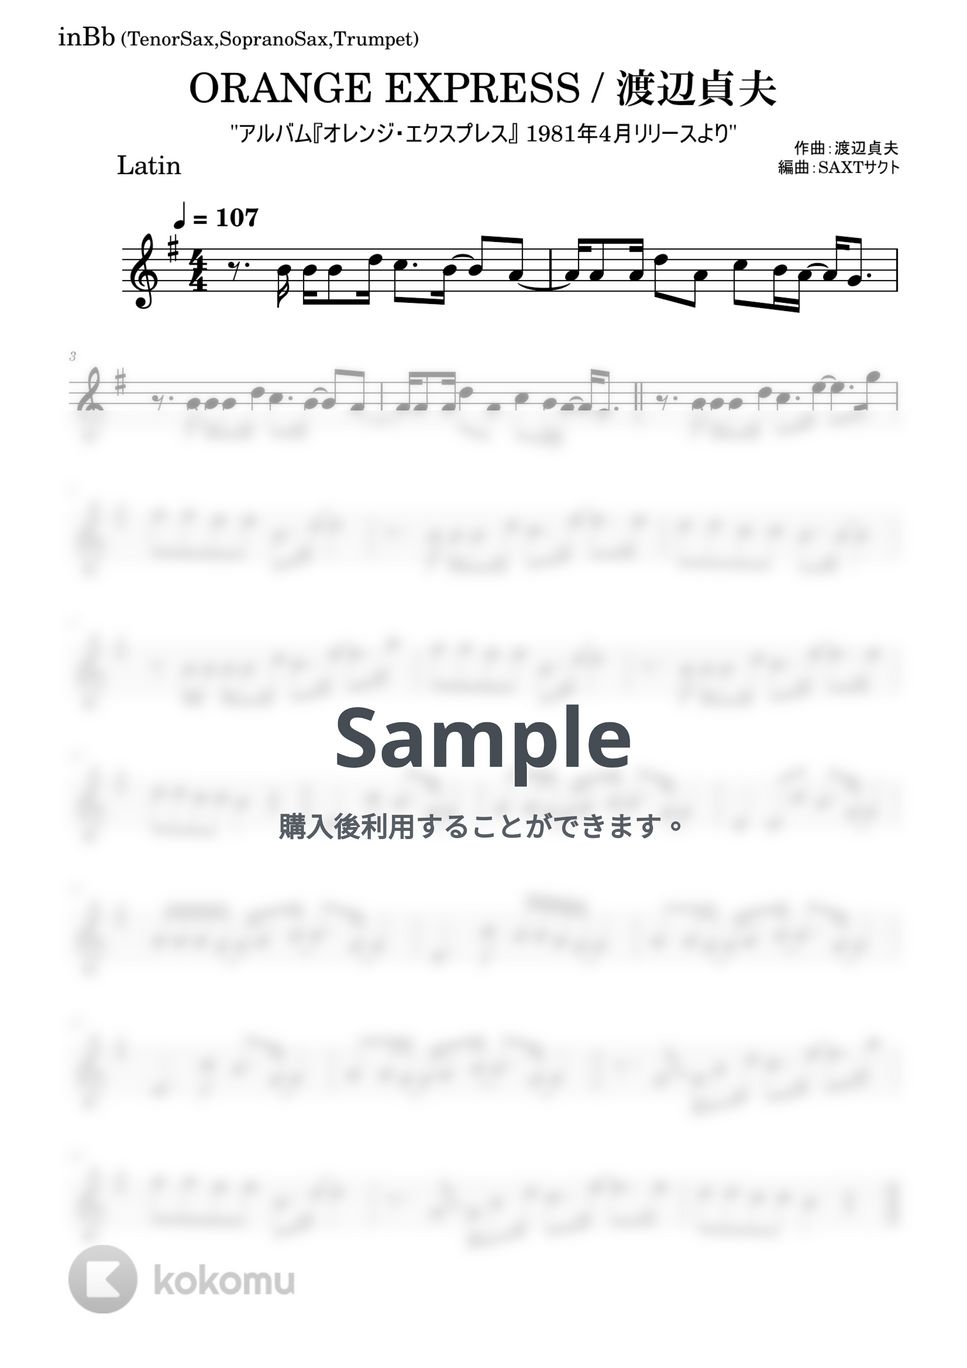 渡辺貞夫 - ORANGE EXPRESS (オリジナルキー) by SAXT